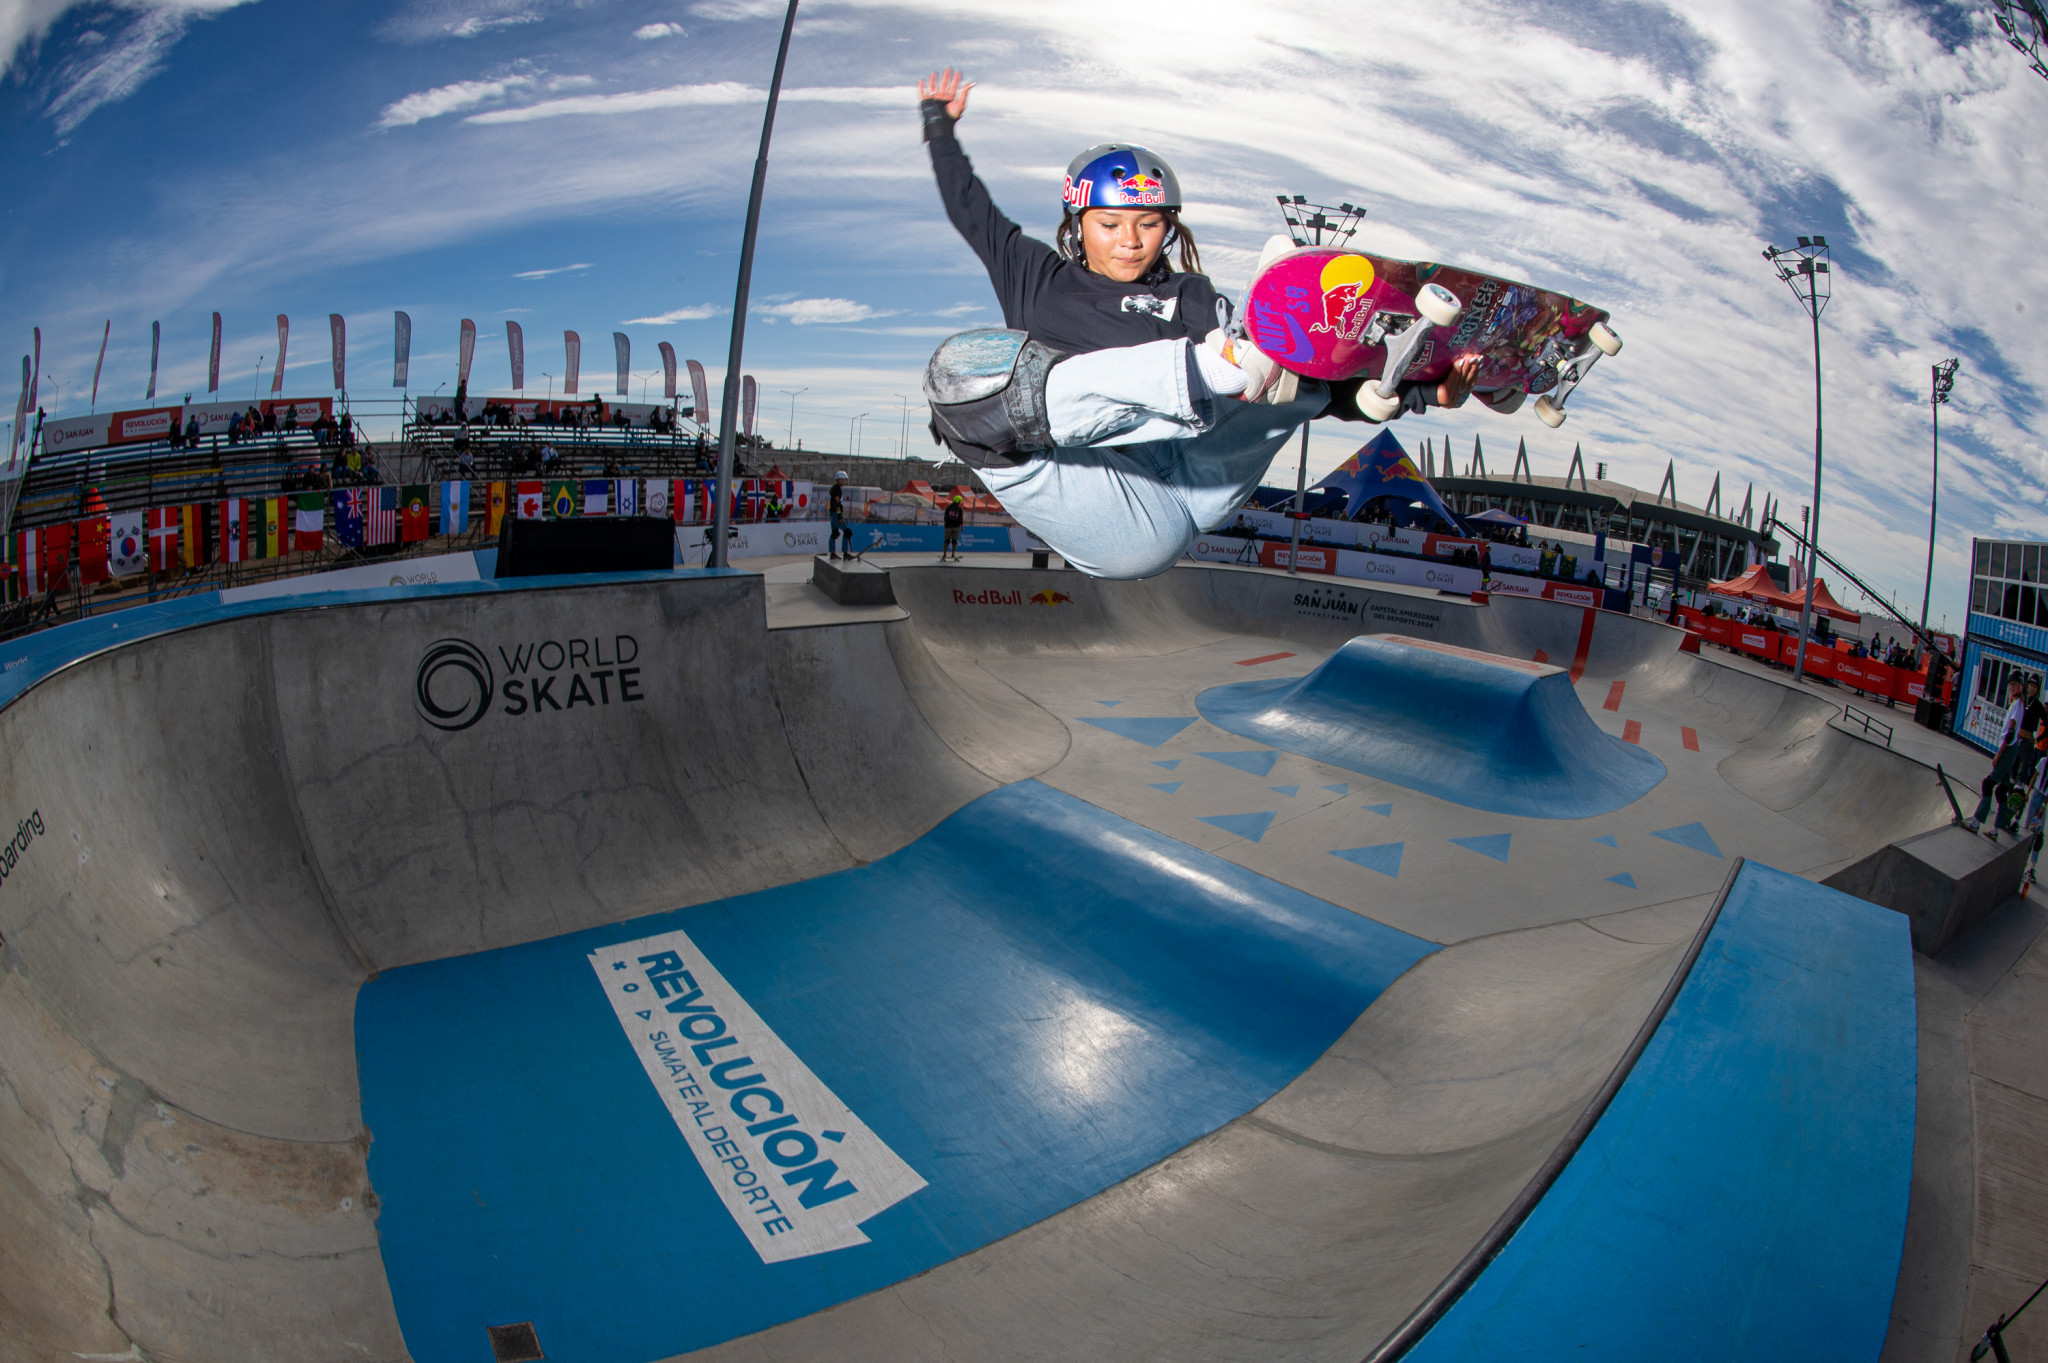 Brown scores valuable Paris 2024 qualifying points at World Skateboarding Pro Tour opener in San Juan